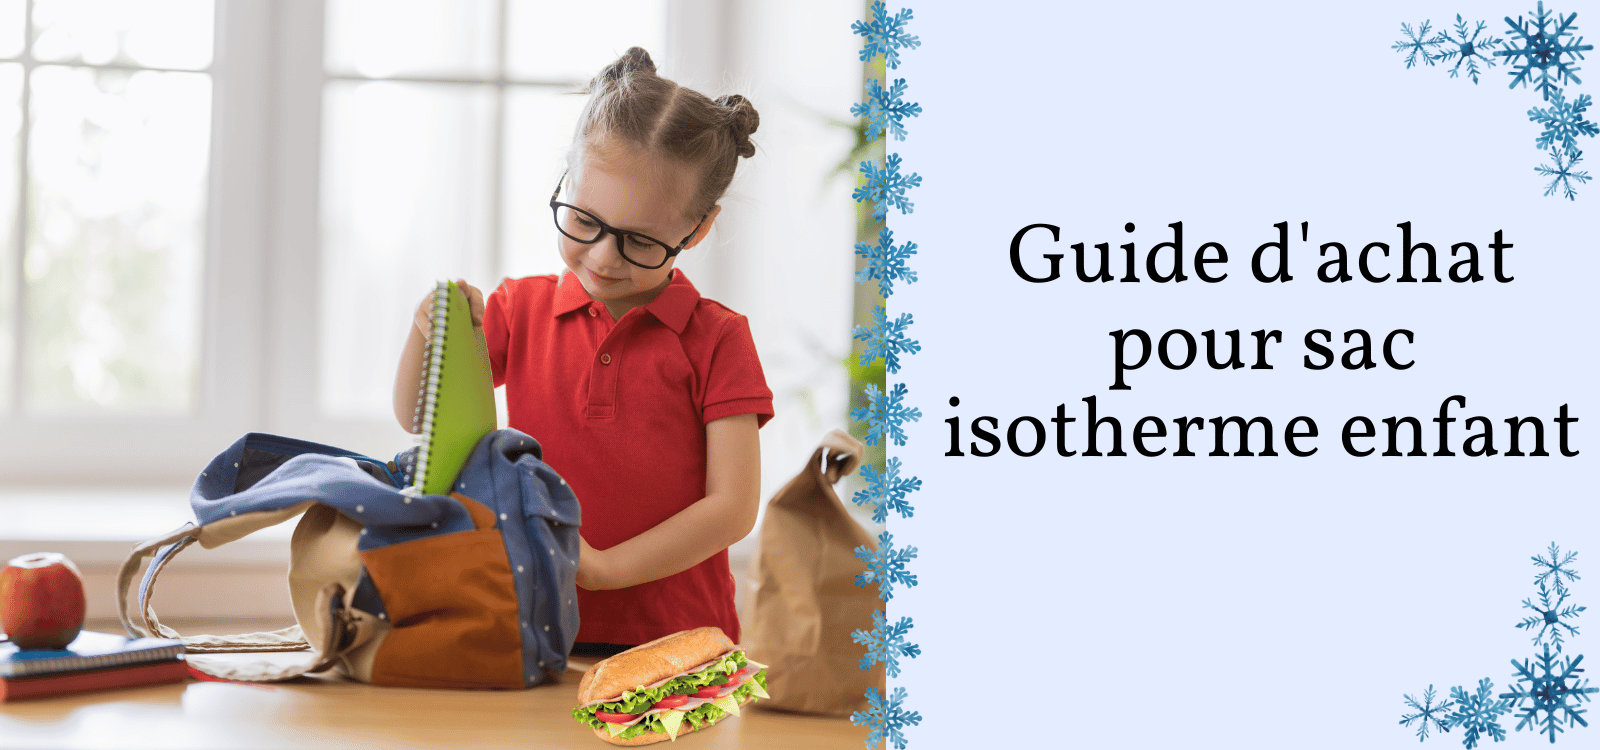 Guide d'achat pour sac isotherme enfant